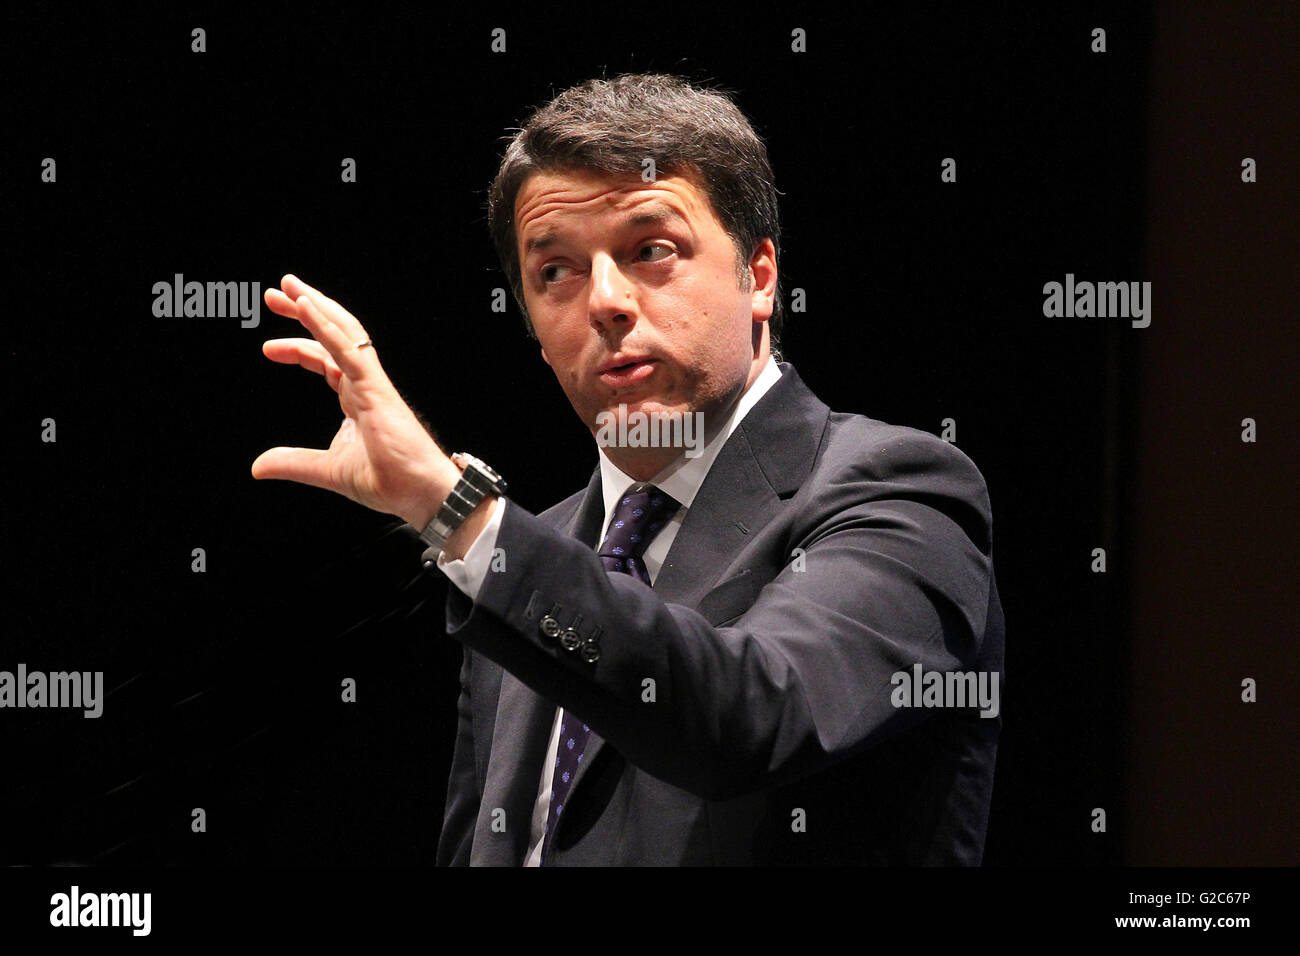 IMatteo Renzi est un homme politique italien. Il est président du Conseil des ministres de la République italienne à partir de février 2013 Banque D'Images